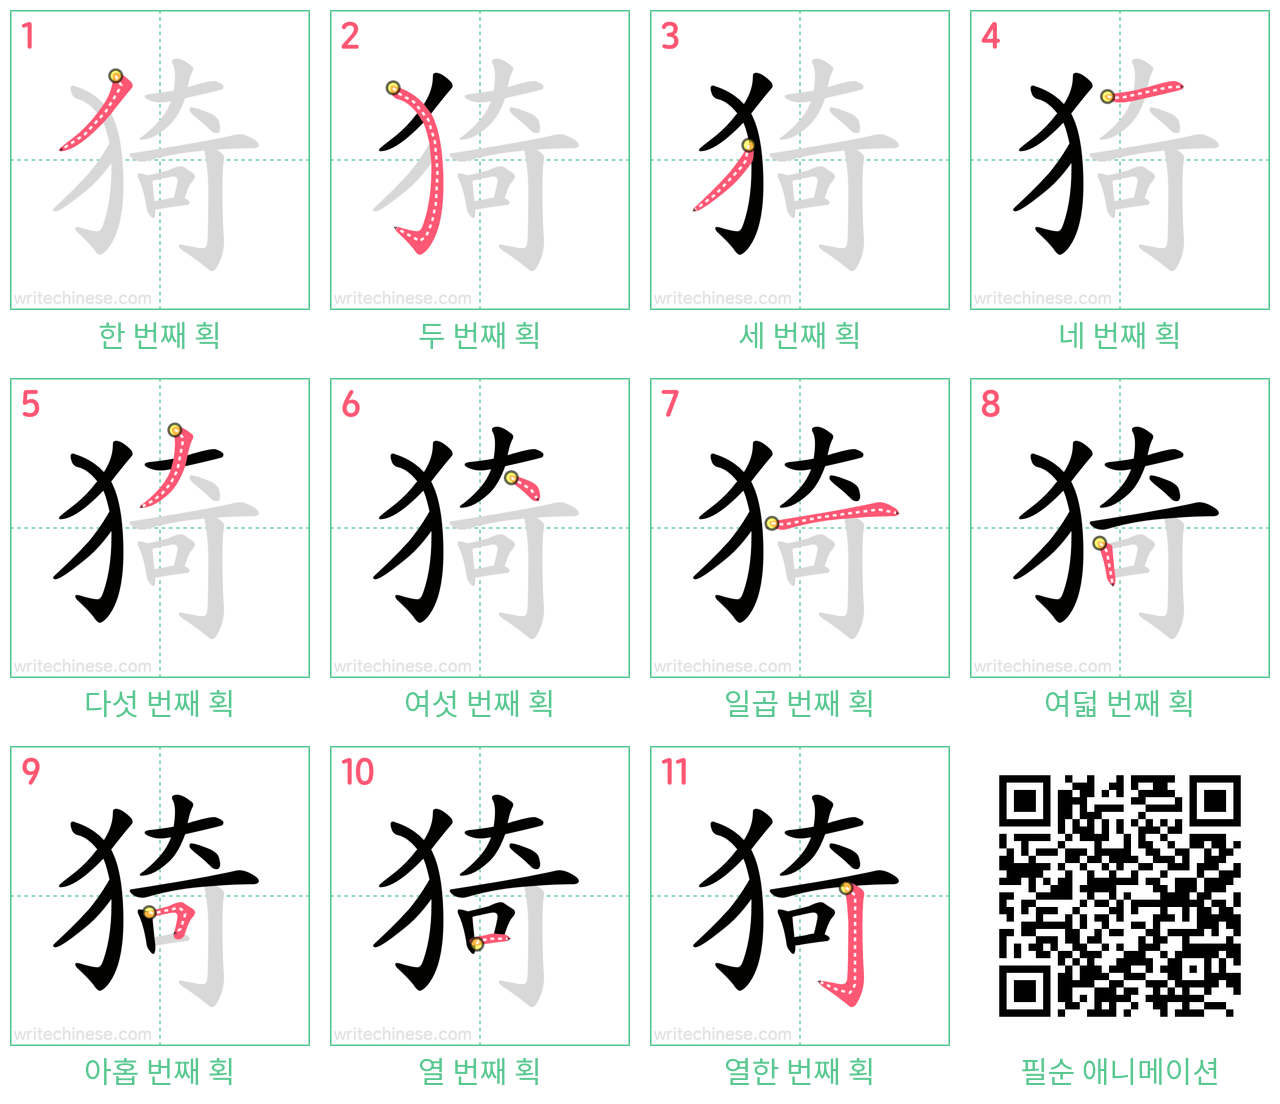 猗 step-by-step stroke order diagrams